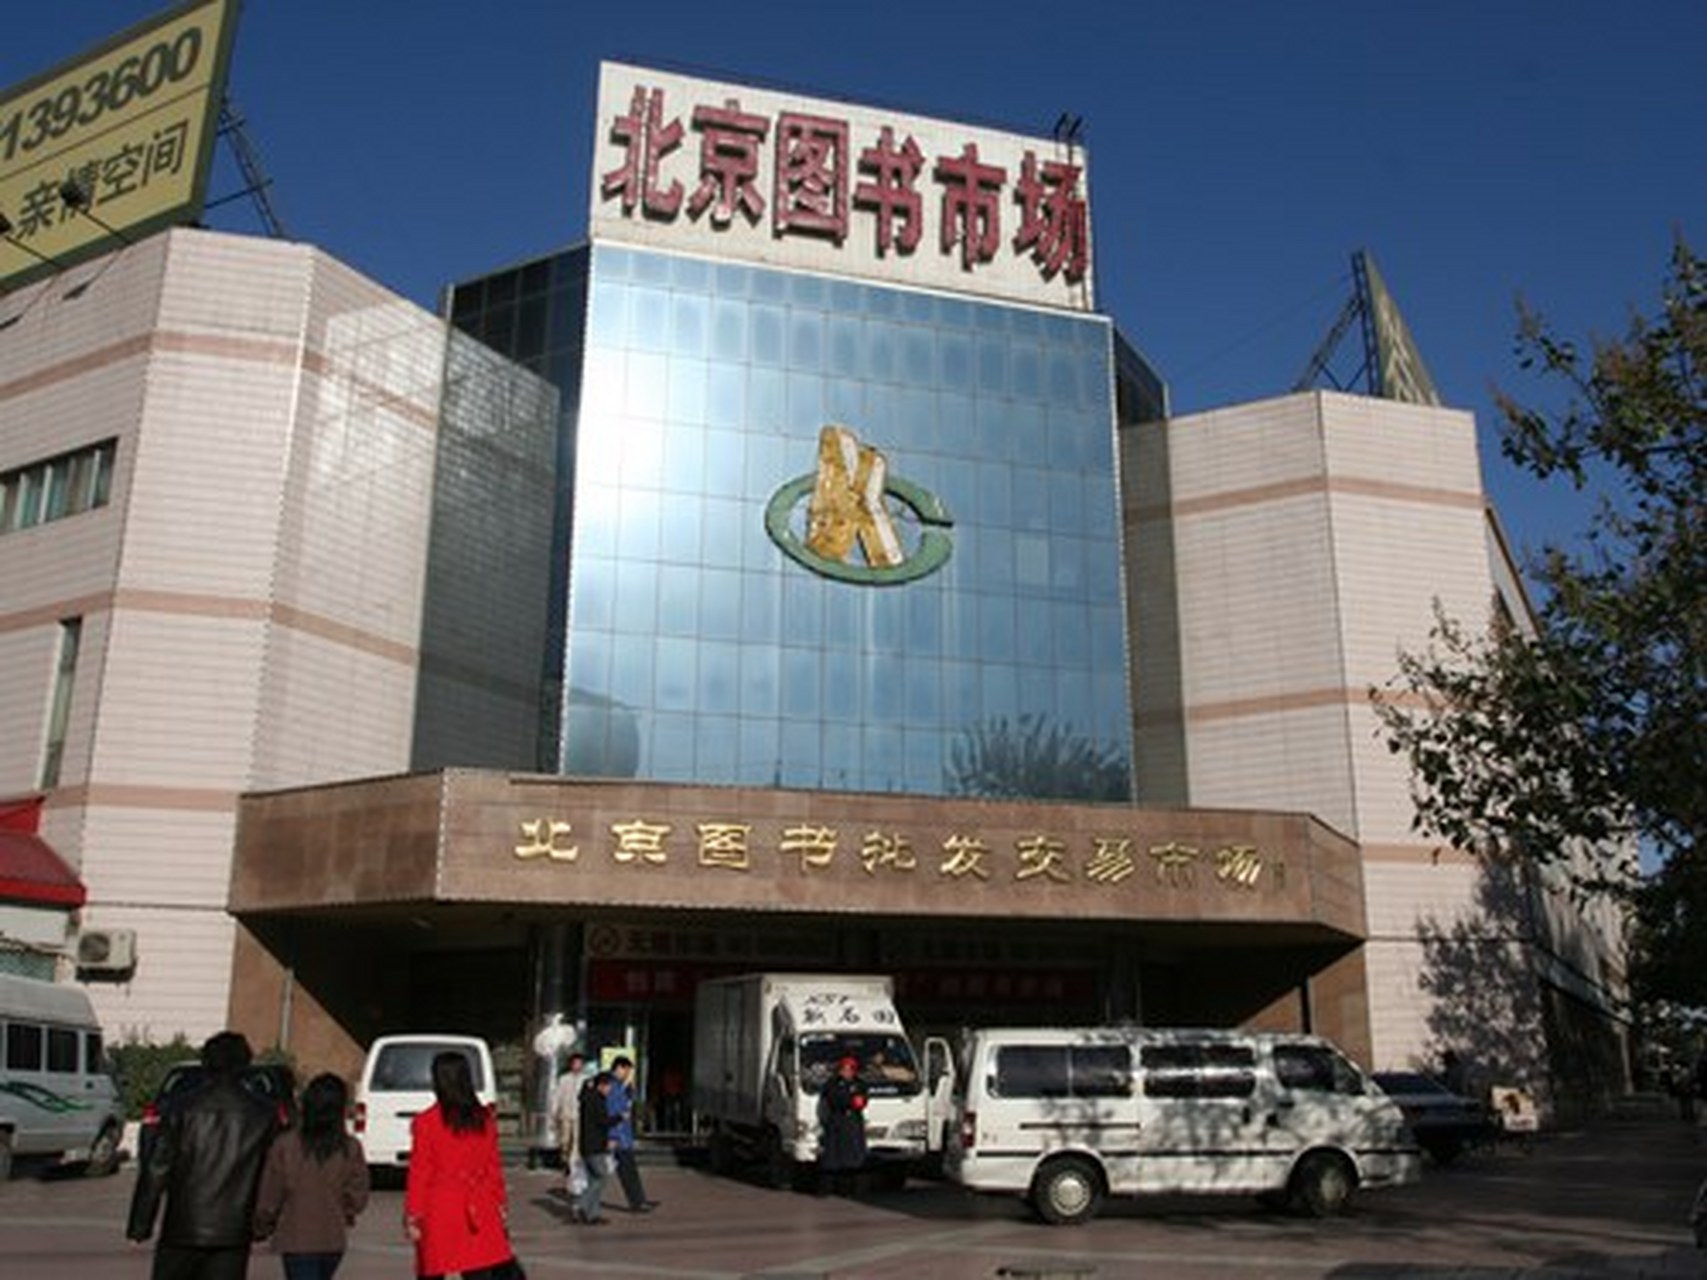 图书批发交易市场  图书批发市场  北京图书批发交易市场成立于1993年